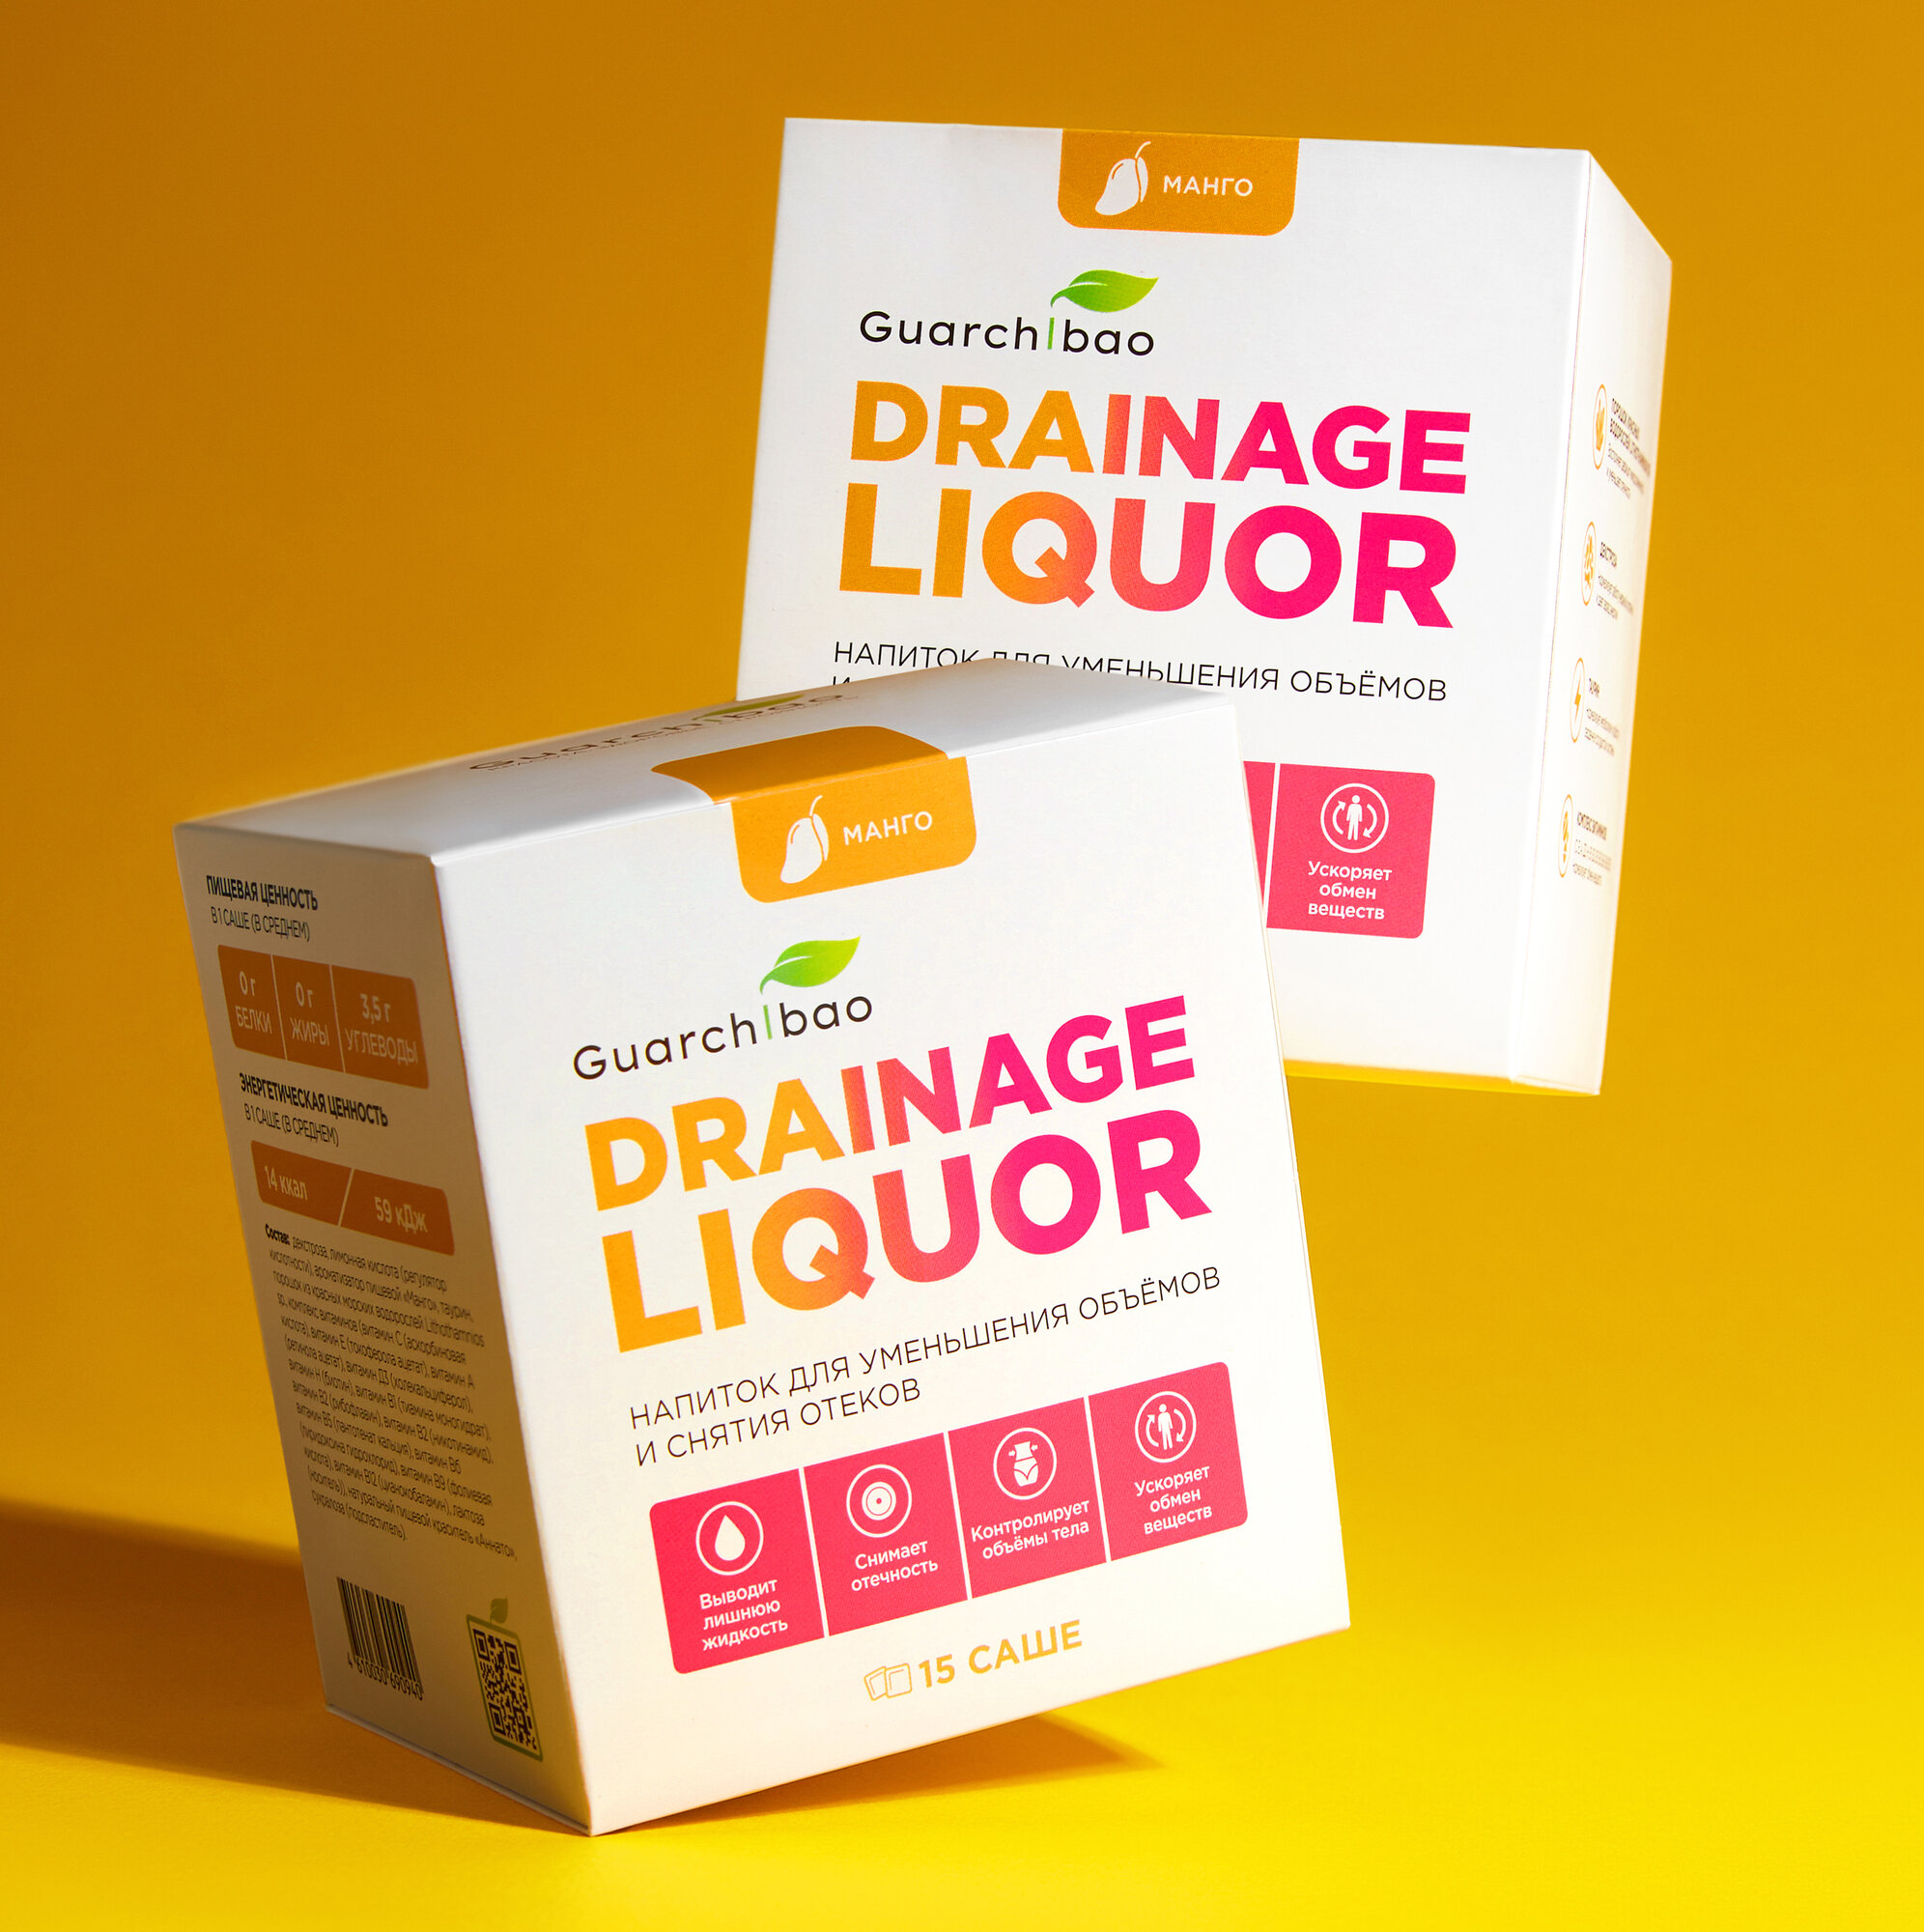 Дренажный напиток Guarchibao Drainage Liquor со вкусом Манго для снятия отеков и уменьшения объемов, для похудения, 2 упаковки (30 саше)